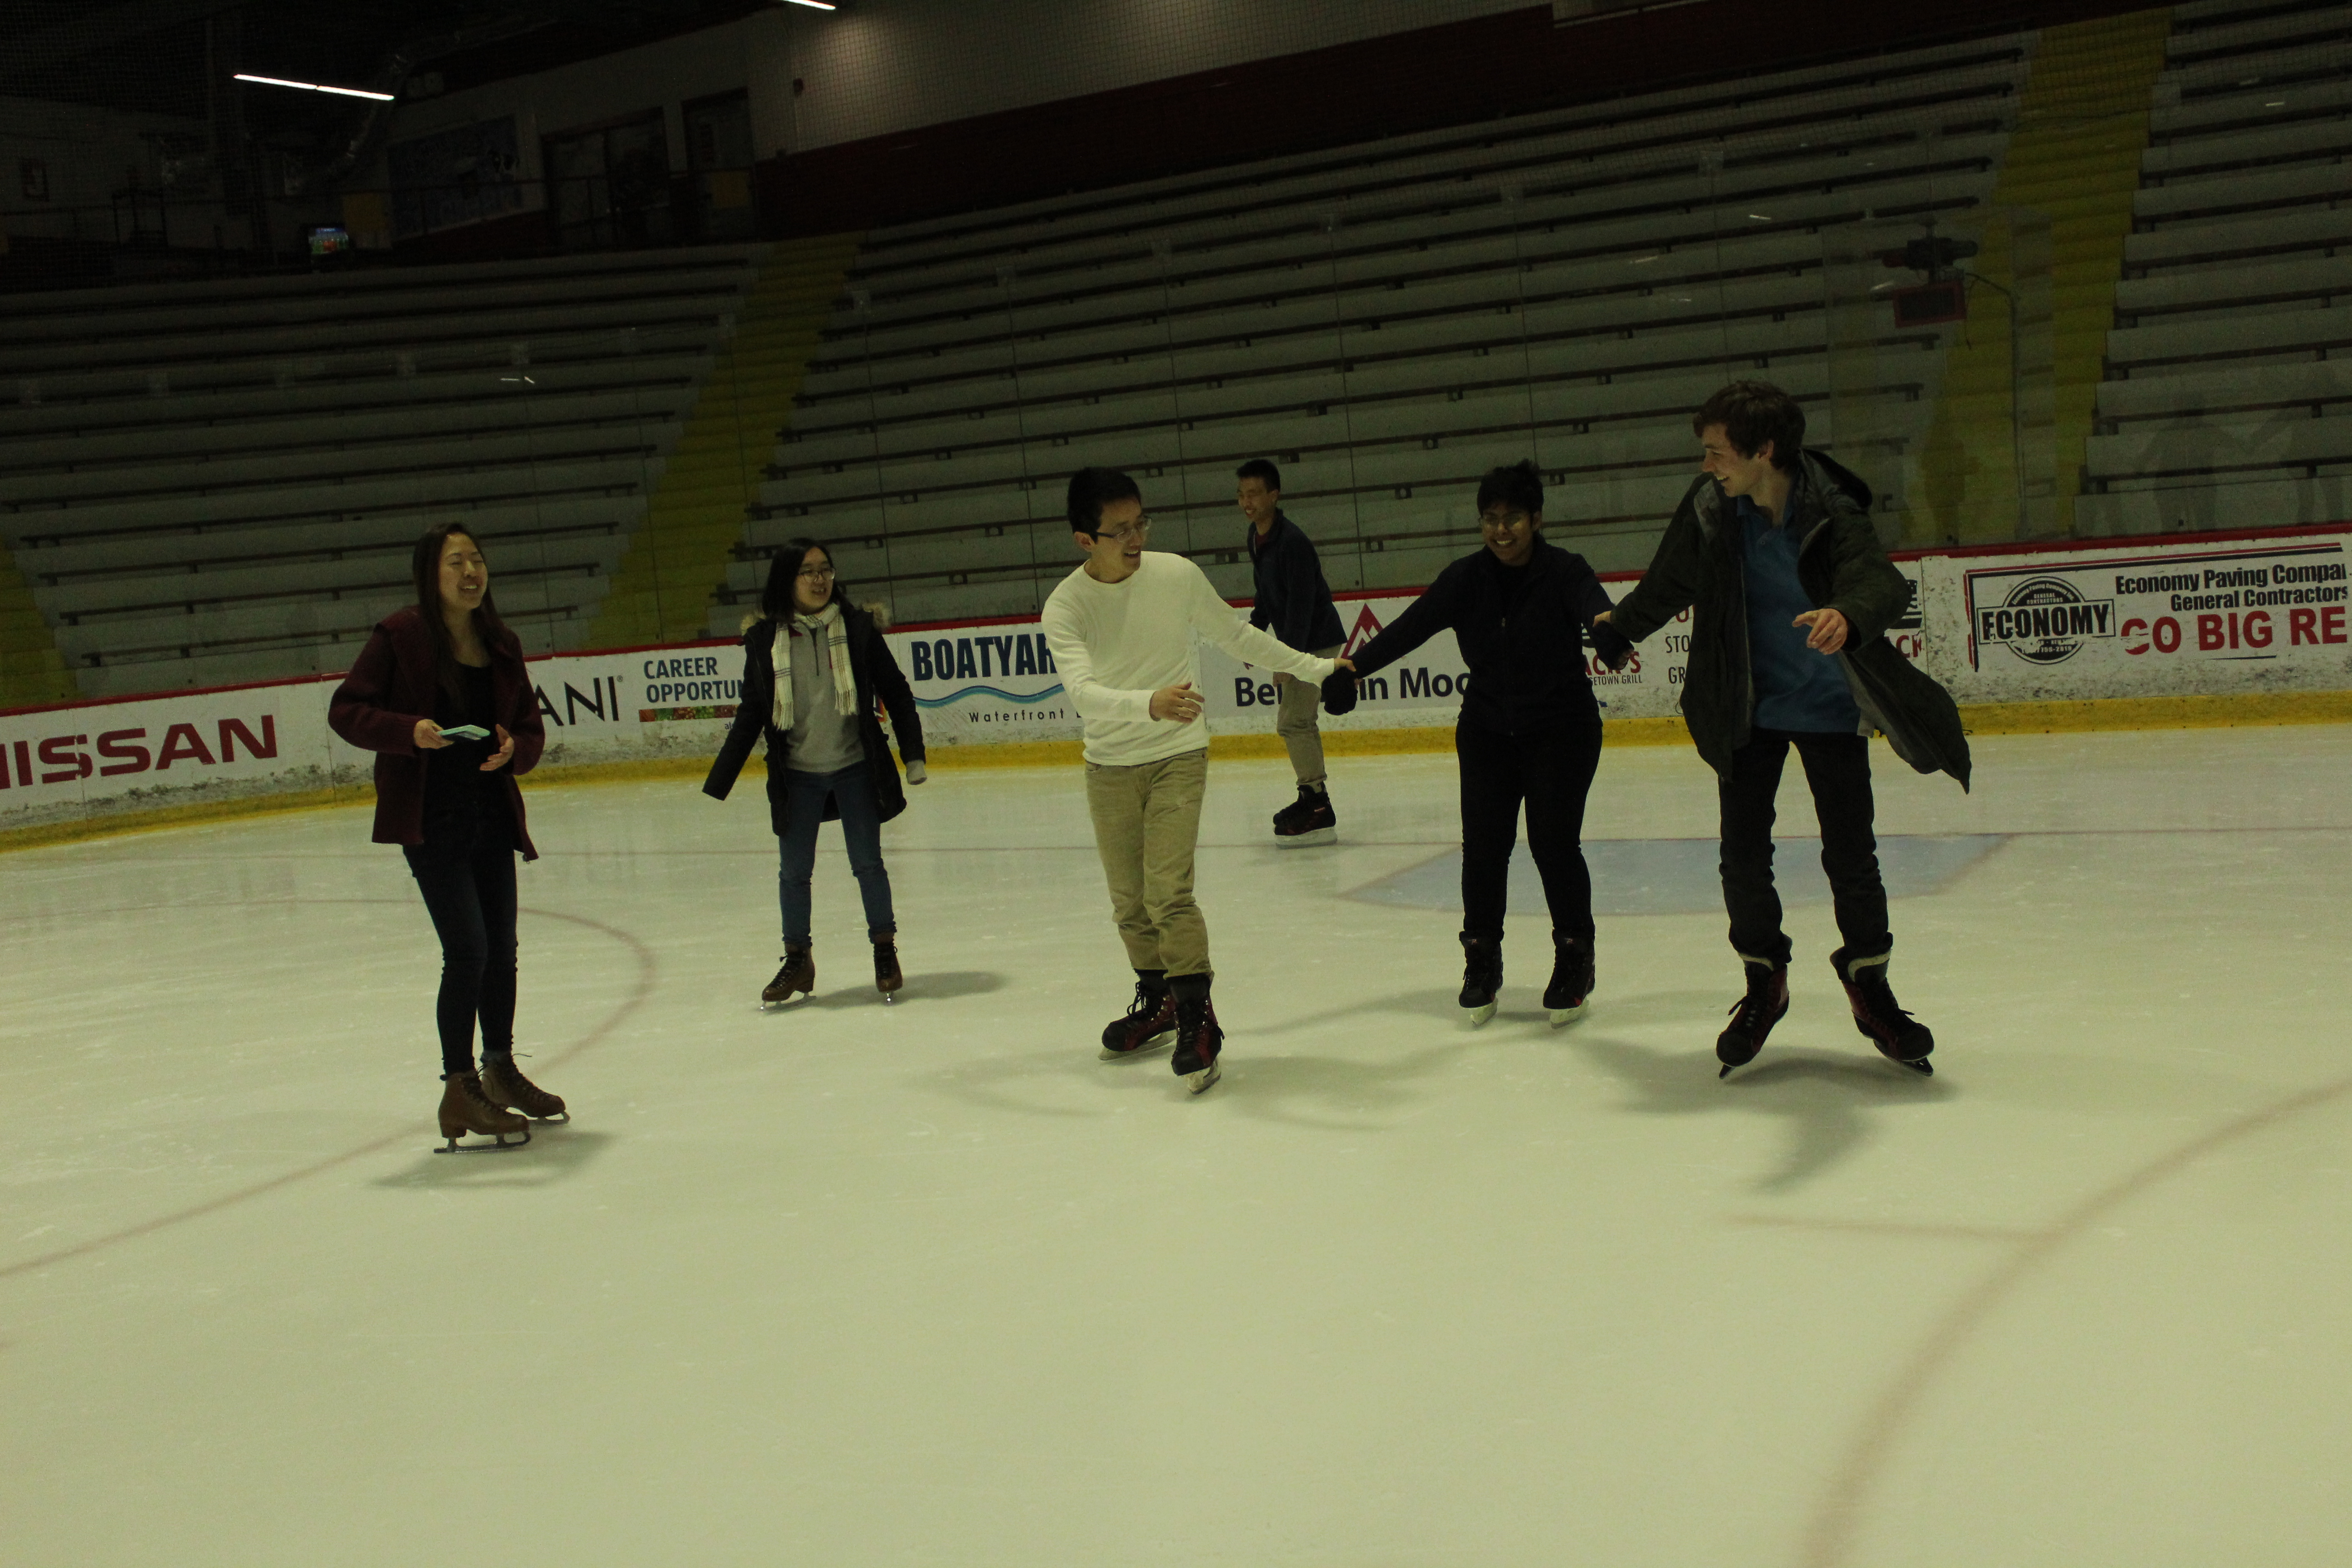 Whole group on skates